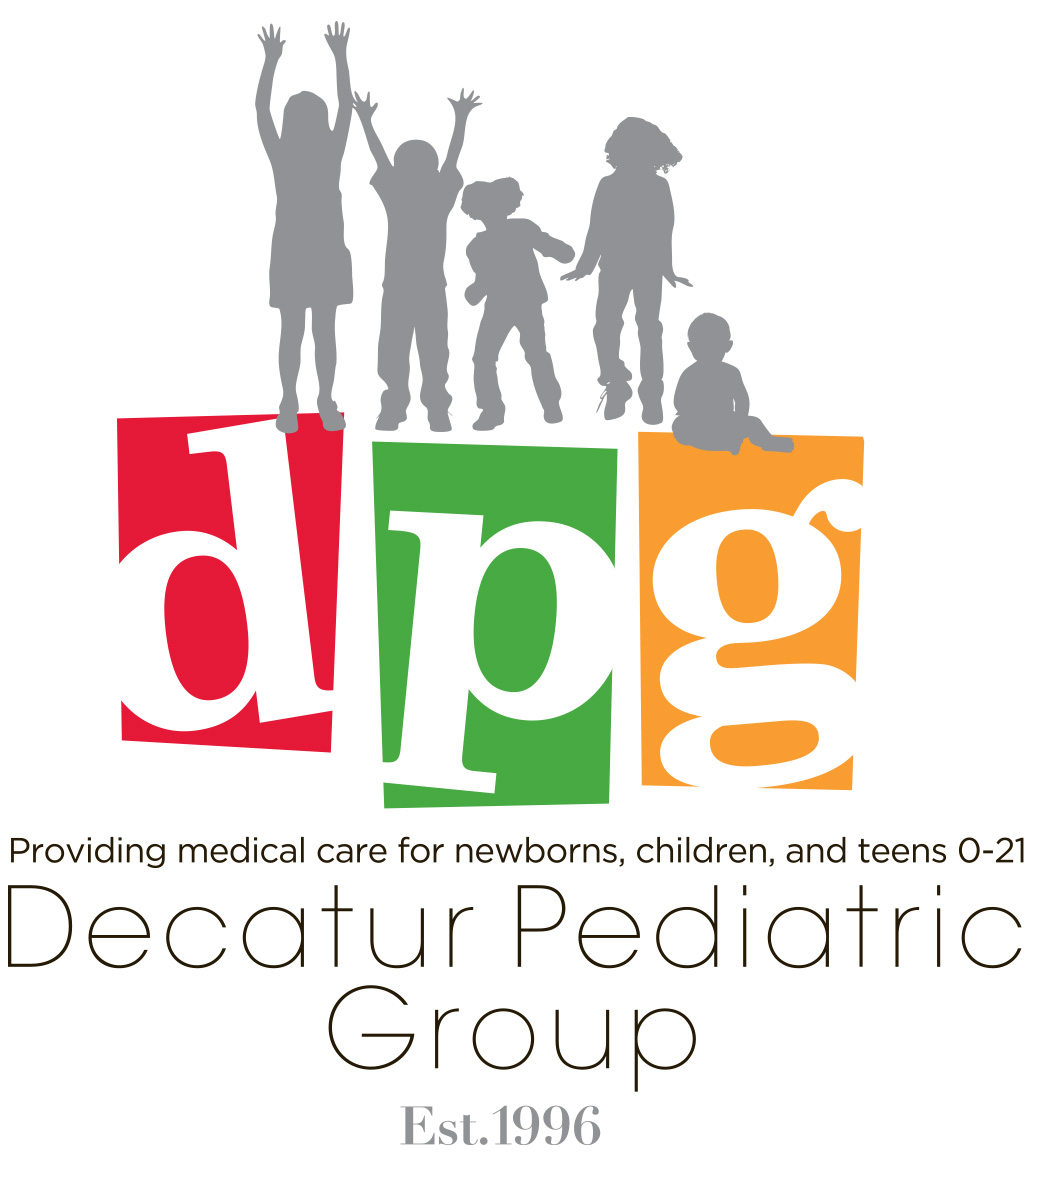 Best Pediatric Primary Care in Charleston, SC - Neighbors Pediatrics -  Medium